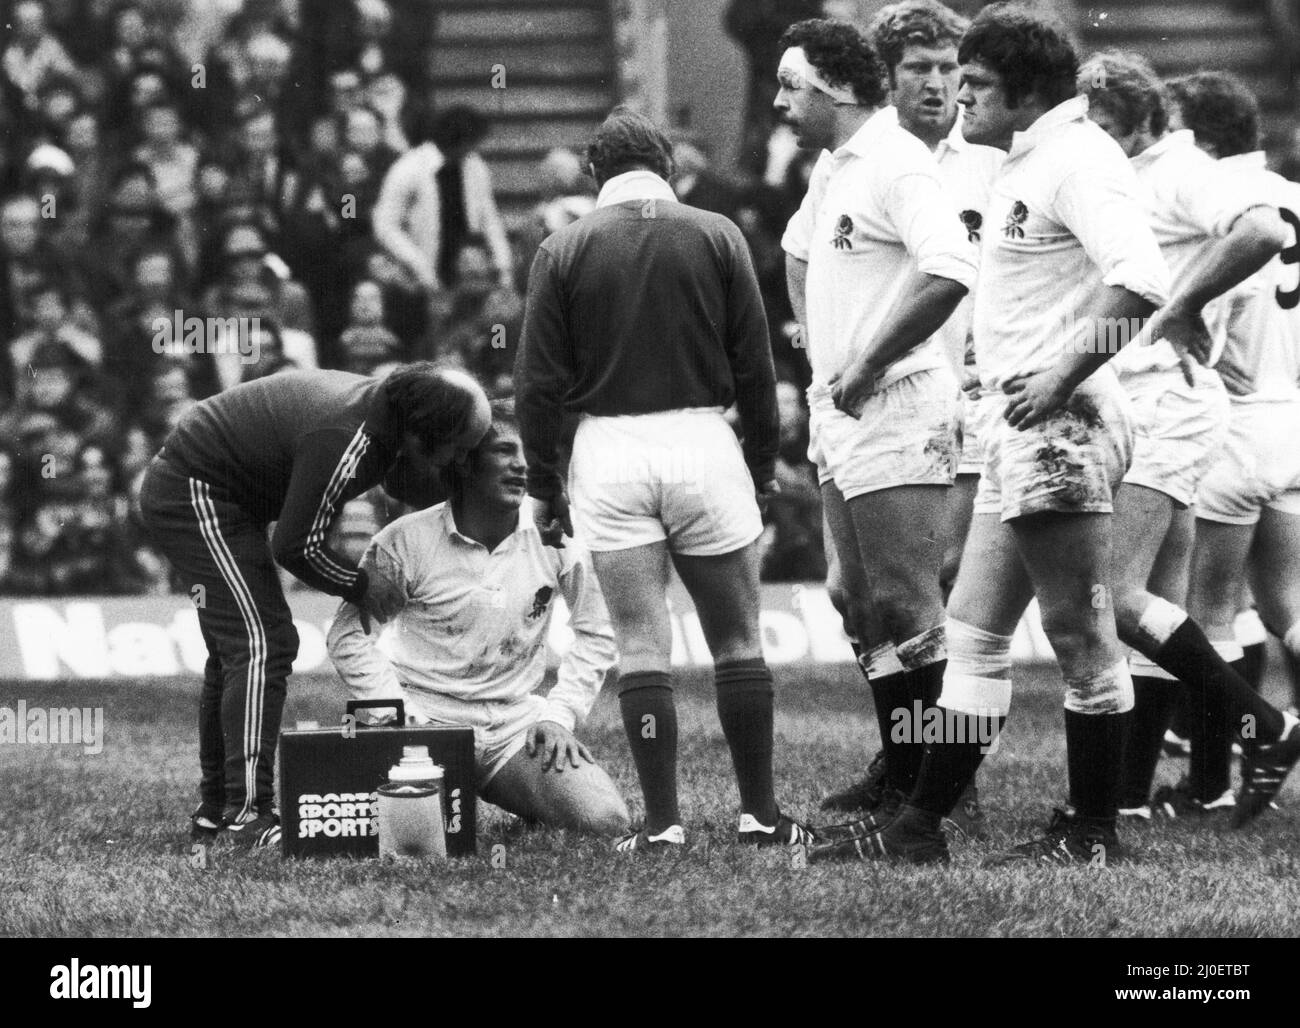 Five Nations Championship Inghilterra / Galles 16th Febbraio 1980.un giocatore inglese infortunato riceve il trattamento come il pacchetto inglese guarda sopra. L'Inghilterra ha vinto la partita 9 - 8 Foto Stock